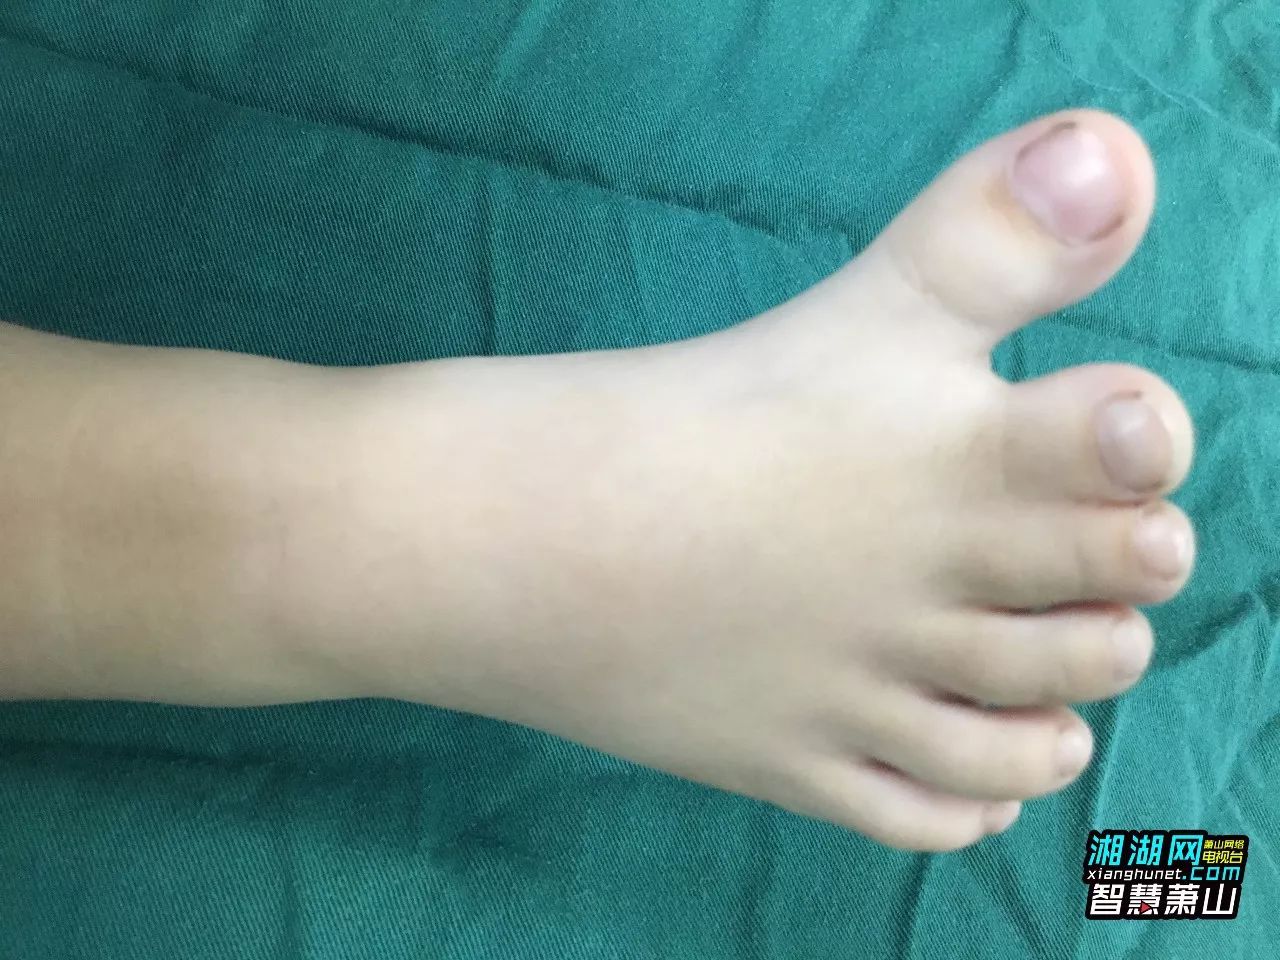 【资讯】萧山一3岁男孩有六个脚趾,中指和无名指被黏连!